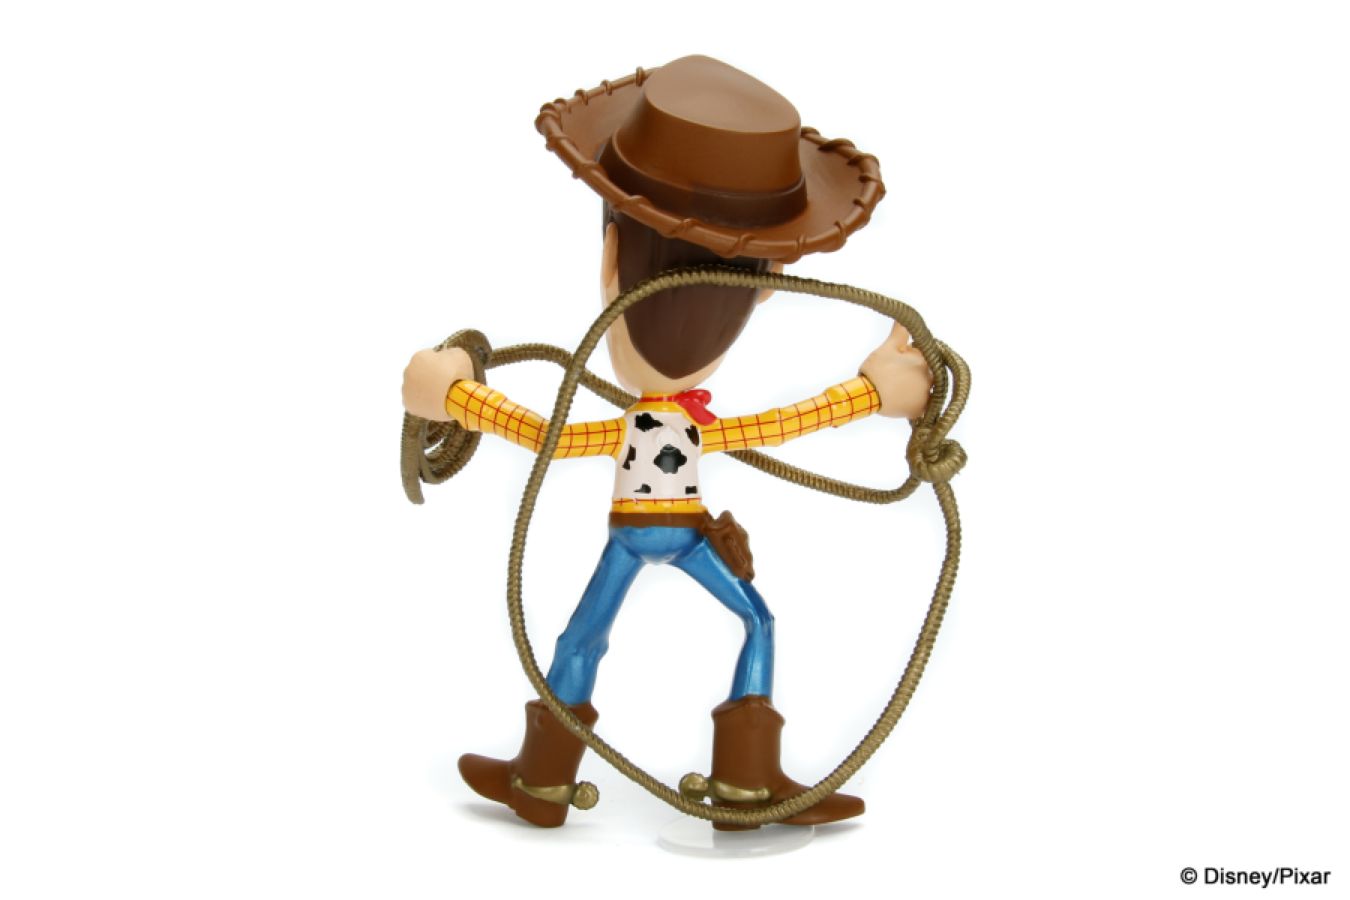 Toy Story - Woody 4" Diecast MetalFig